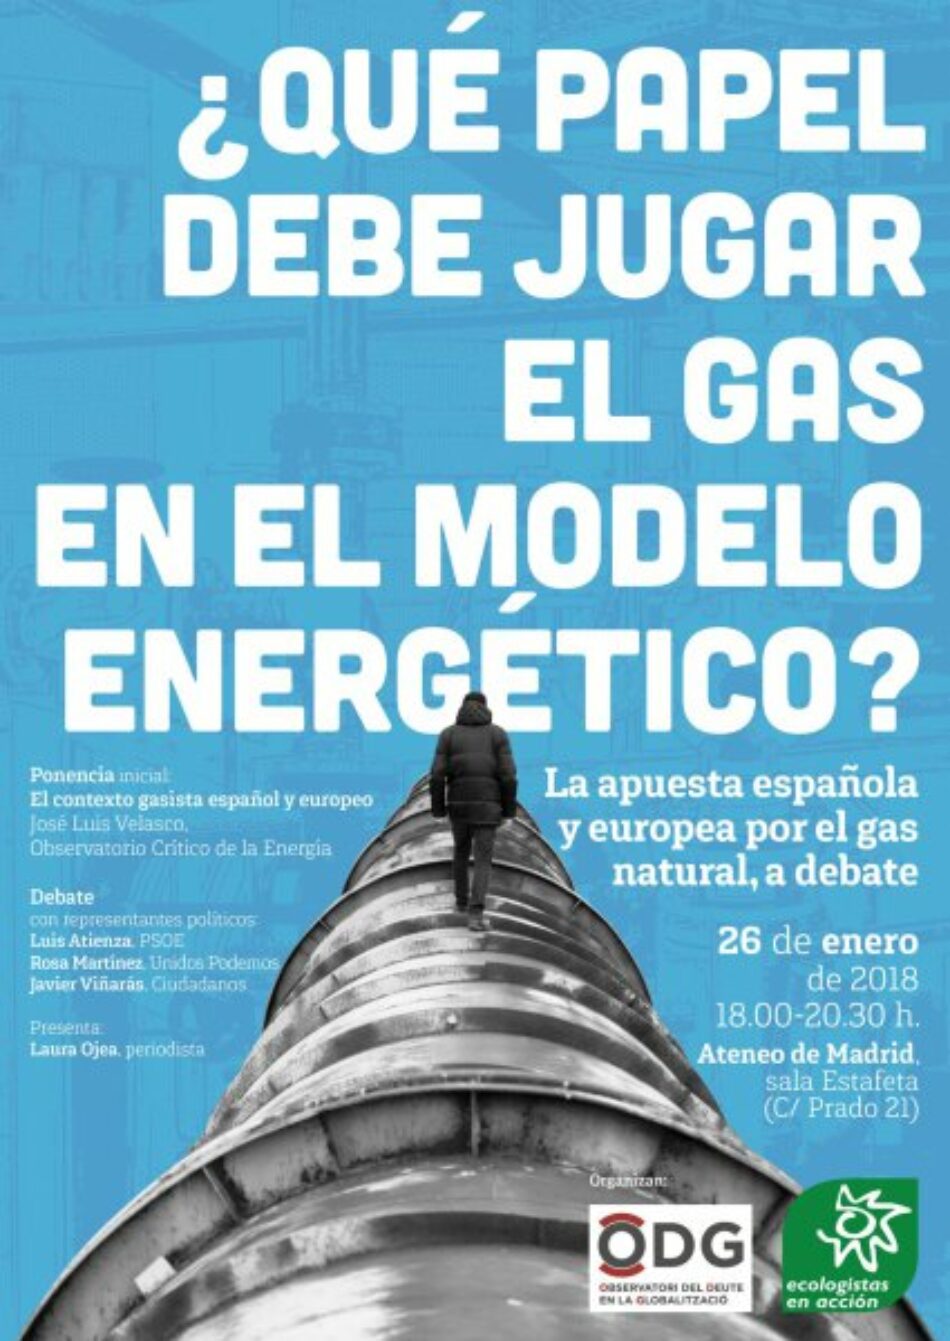 La apuesta española y europea por el gas natural, a debate